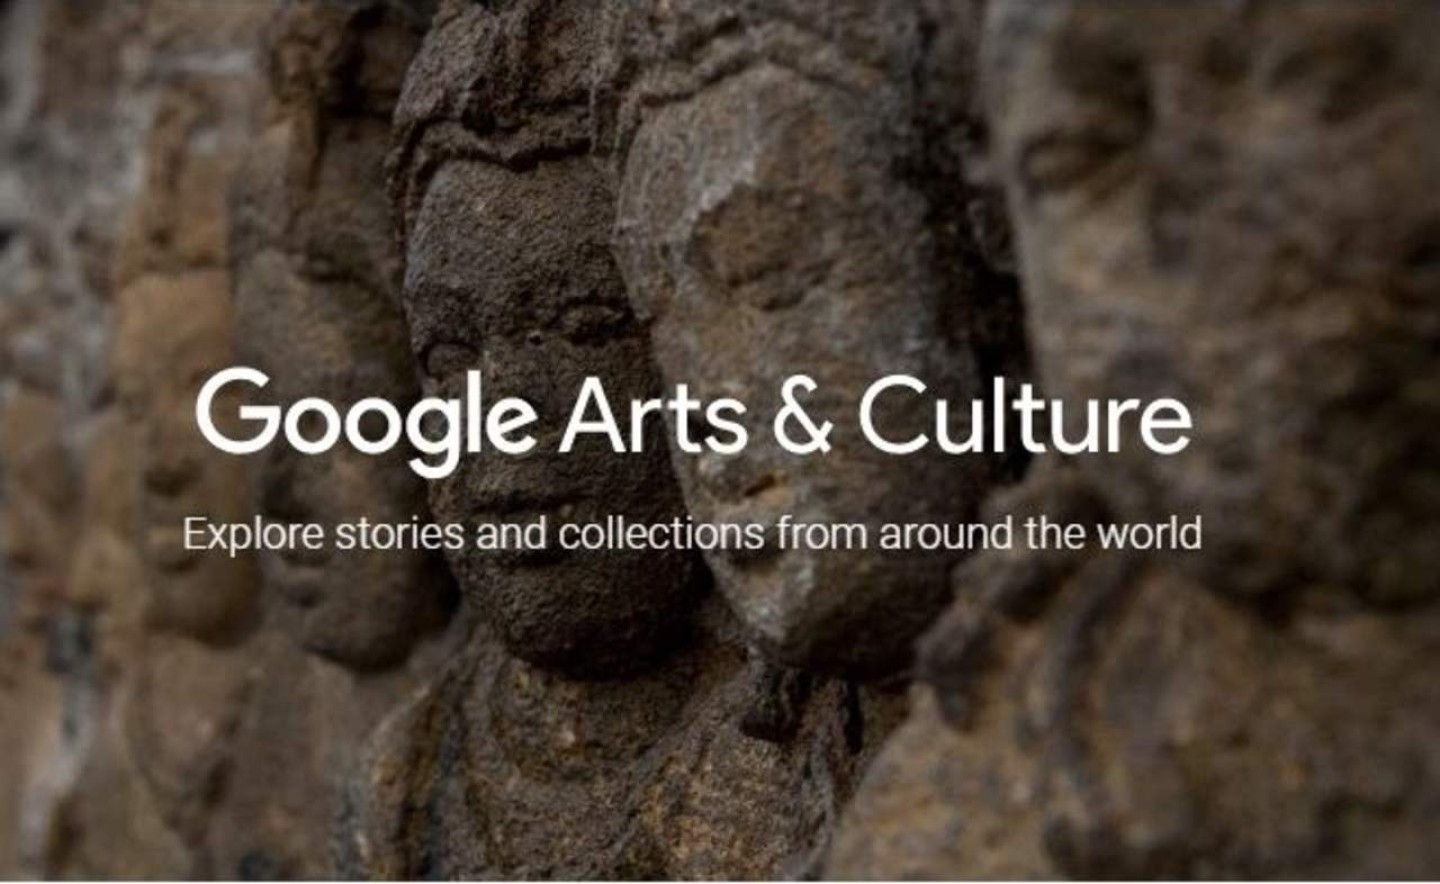 Viajar en el tiempo desde el año 200 a.c hasta la actualidad es posible si accedes al nuevo site, presentado por el Instituto Cultural de Google.